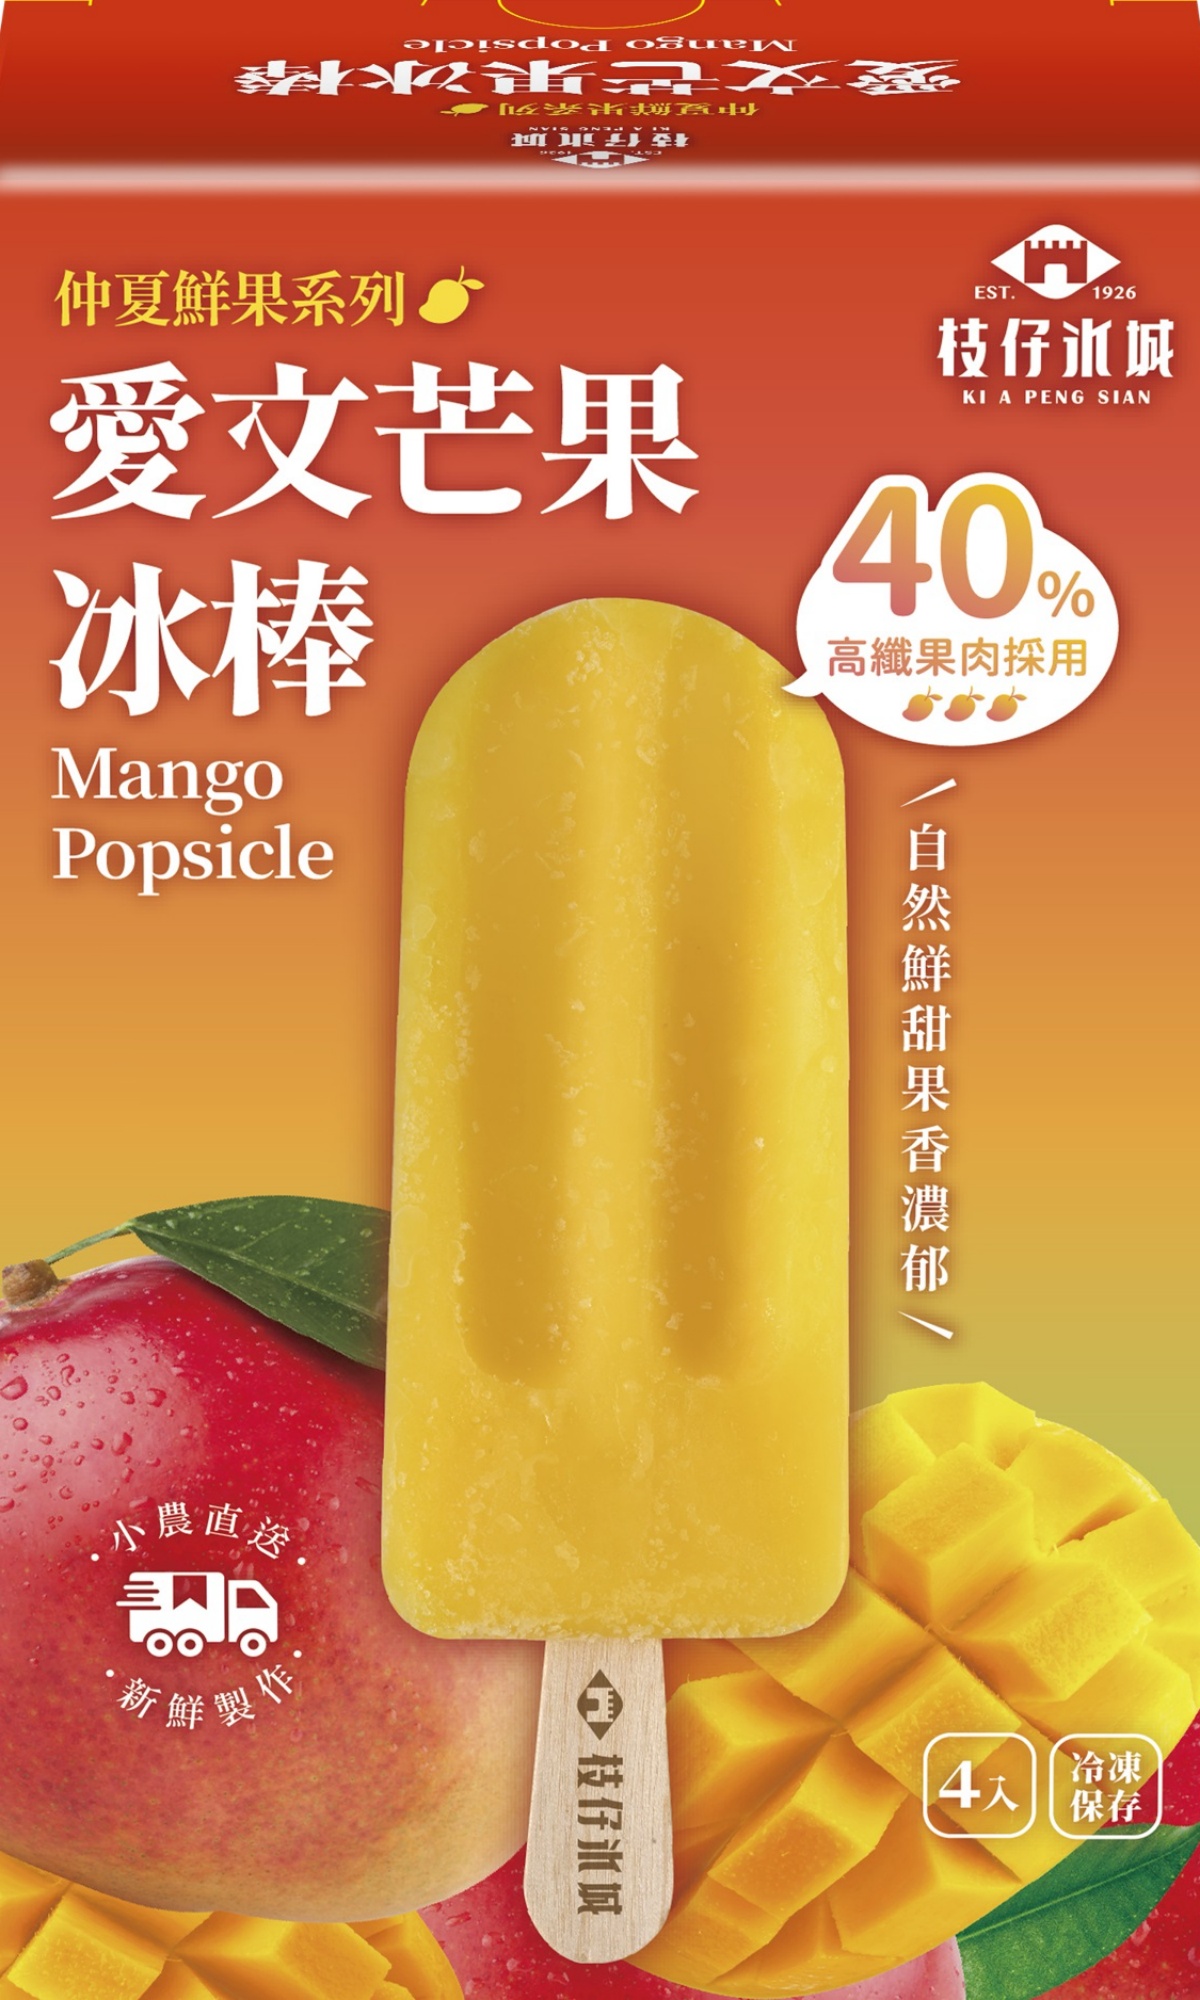 【芒果冰淇淋】香浓无色素,入口即化